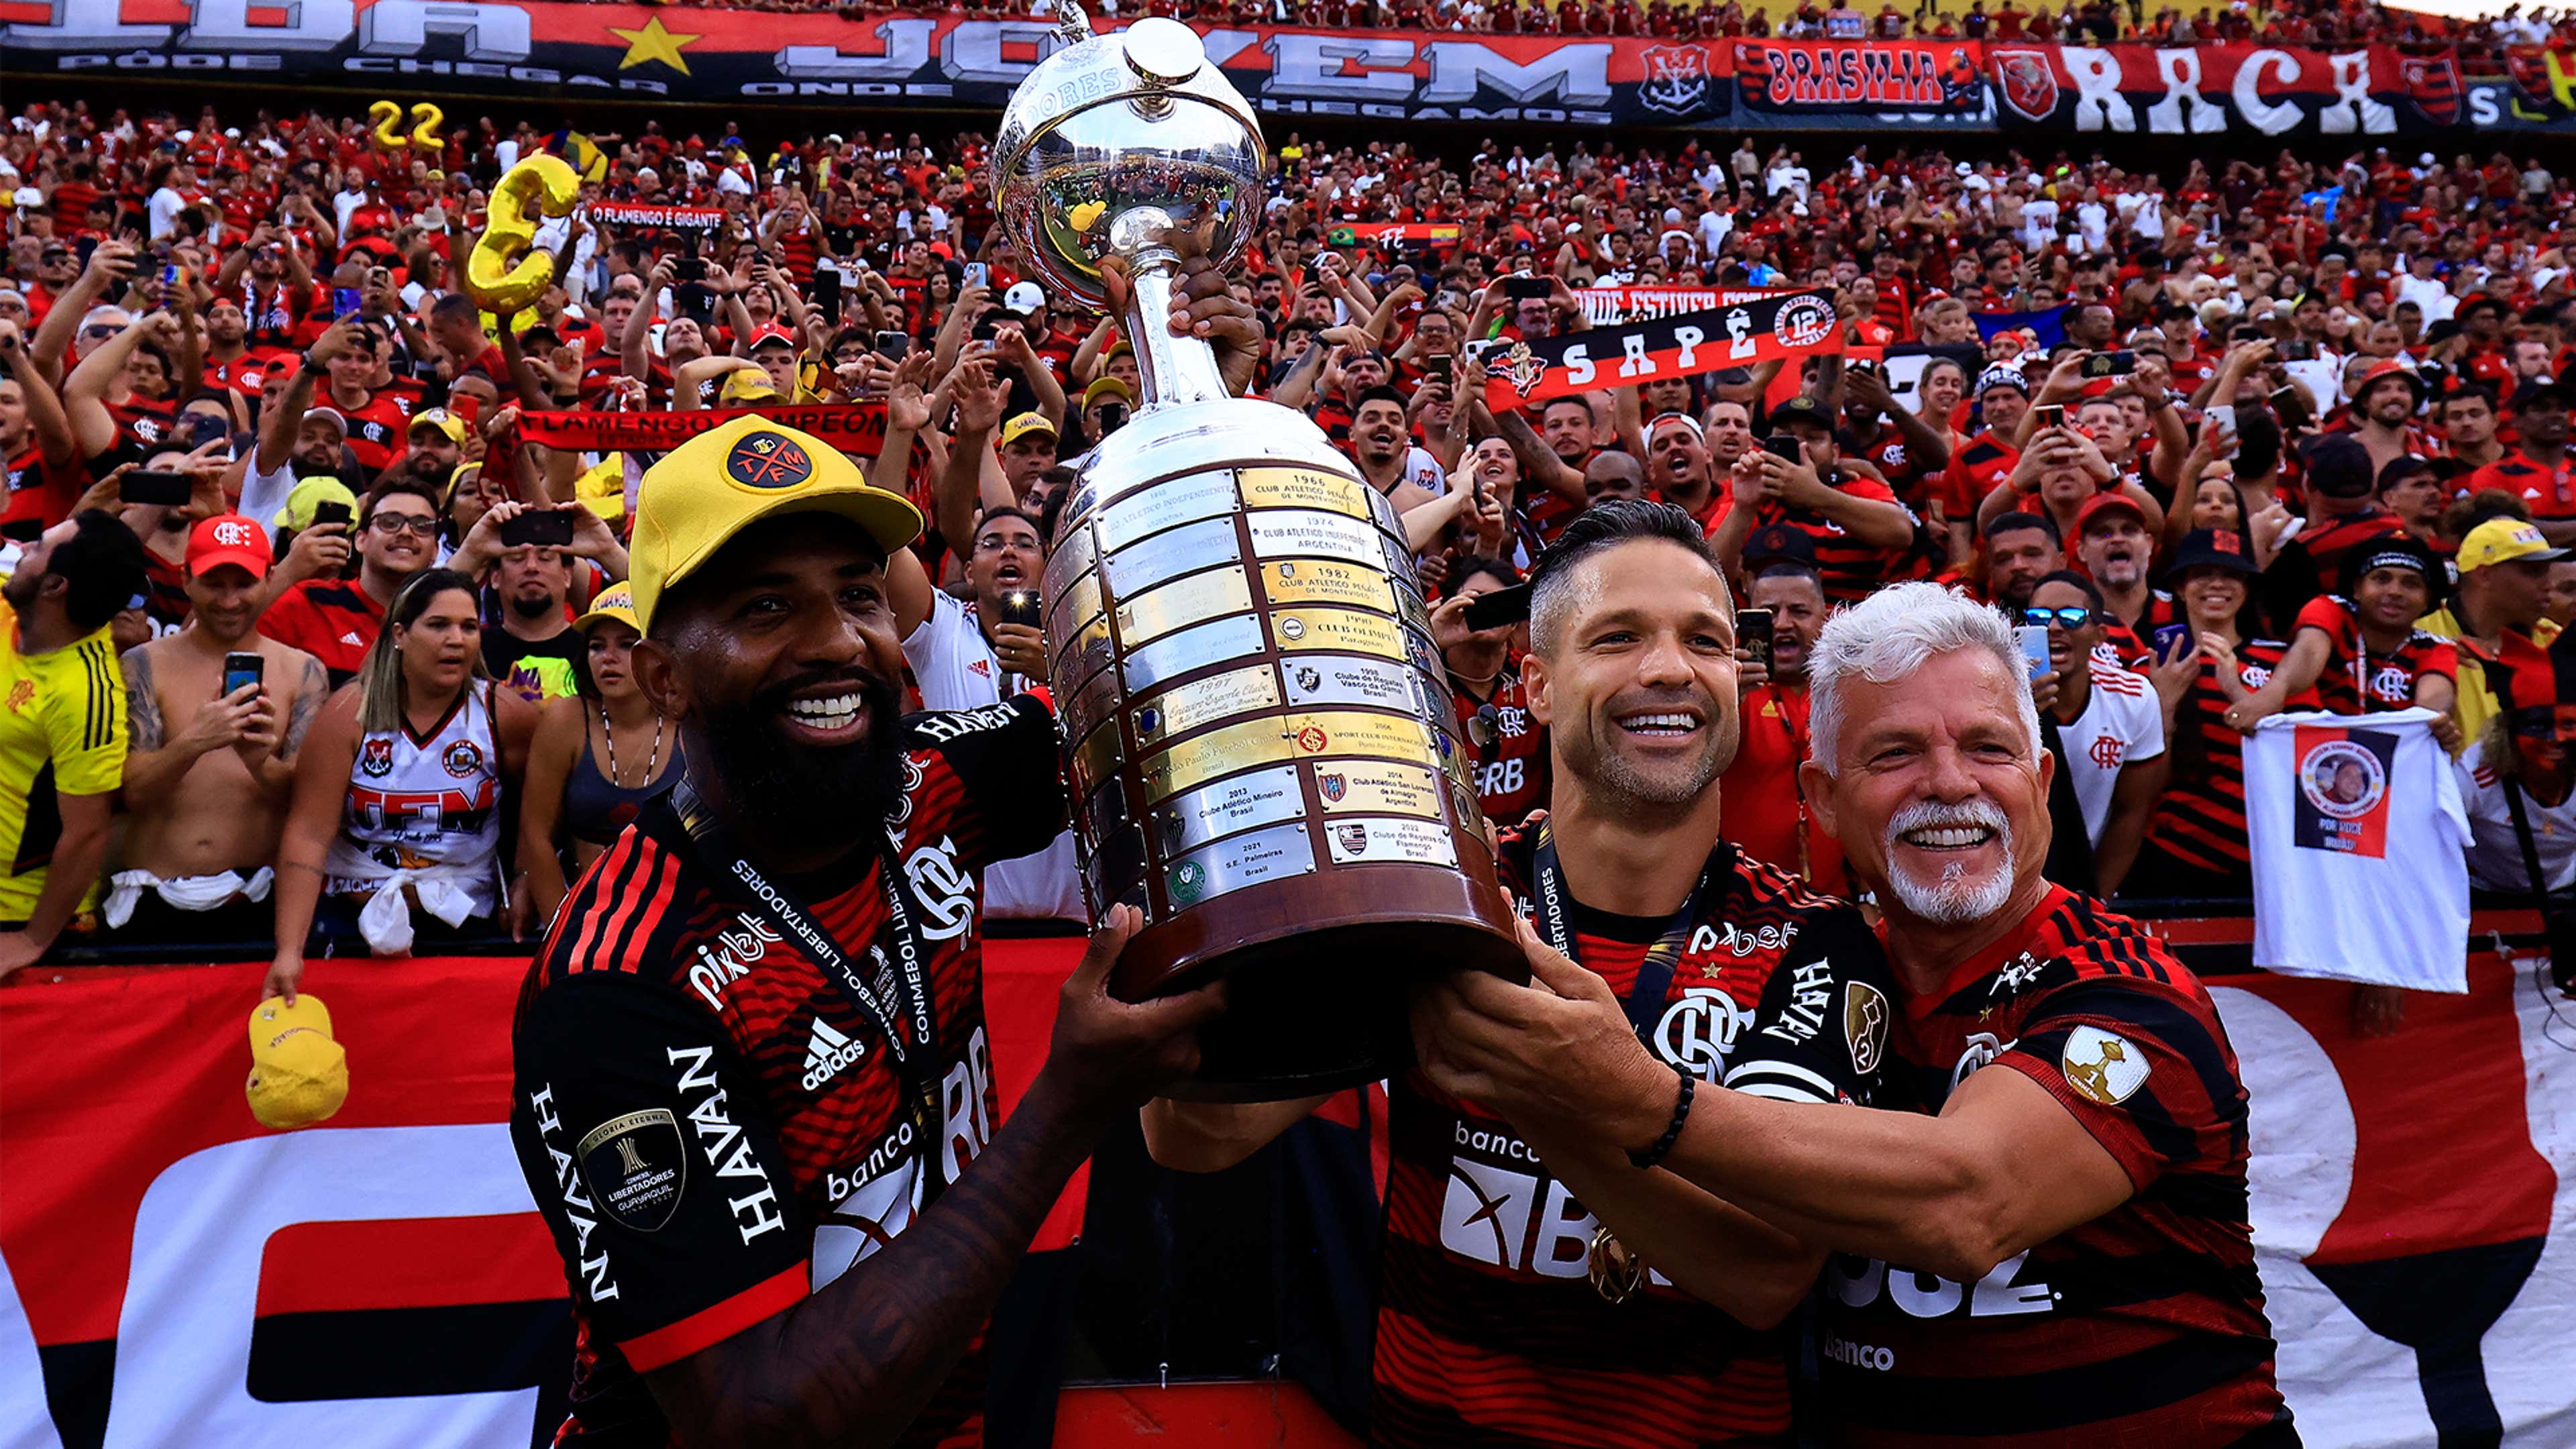 Palmeiras vs Flamengo on US TV: How to watch and live stream CONMEBOL Copa  Libertadores